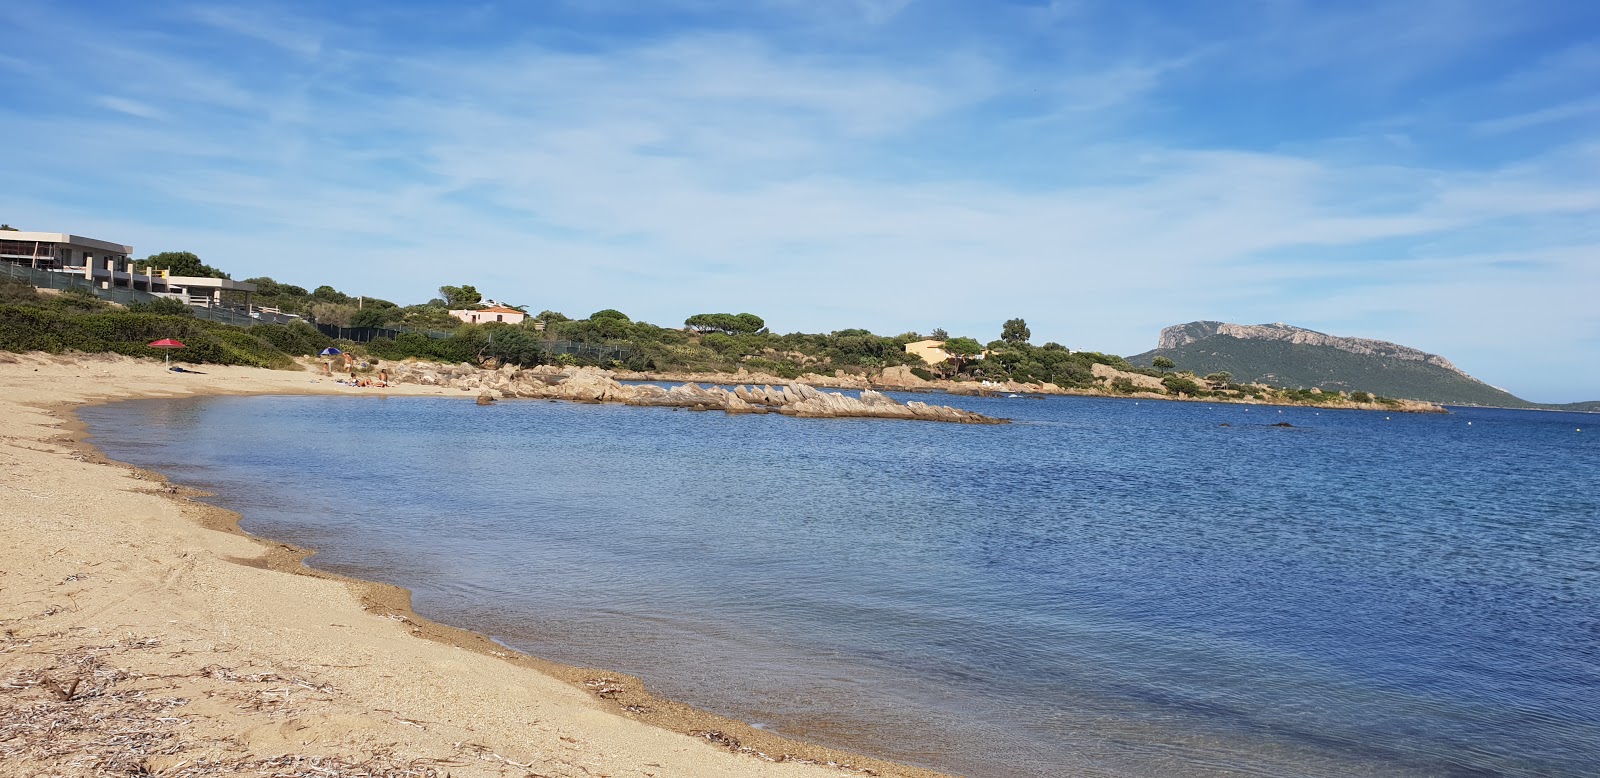 Foto de Spiaggia S'abba e sa Pedra com pequena baía